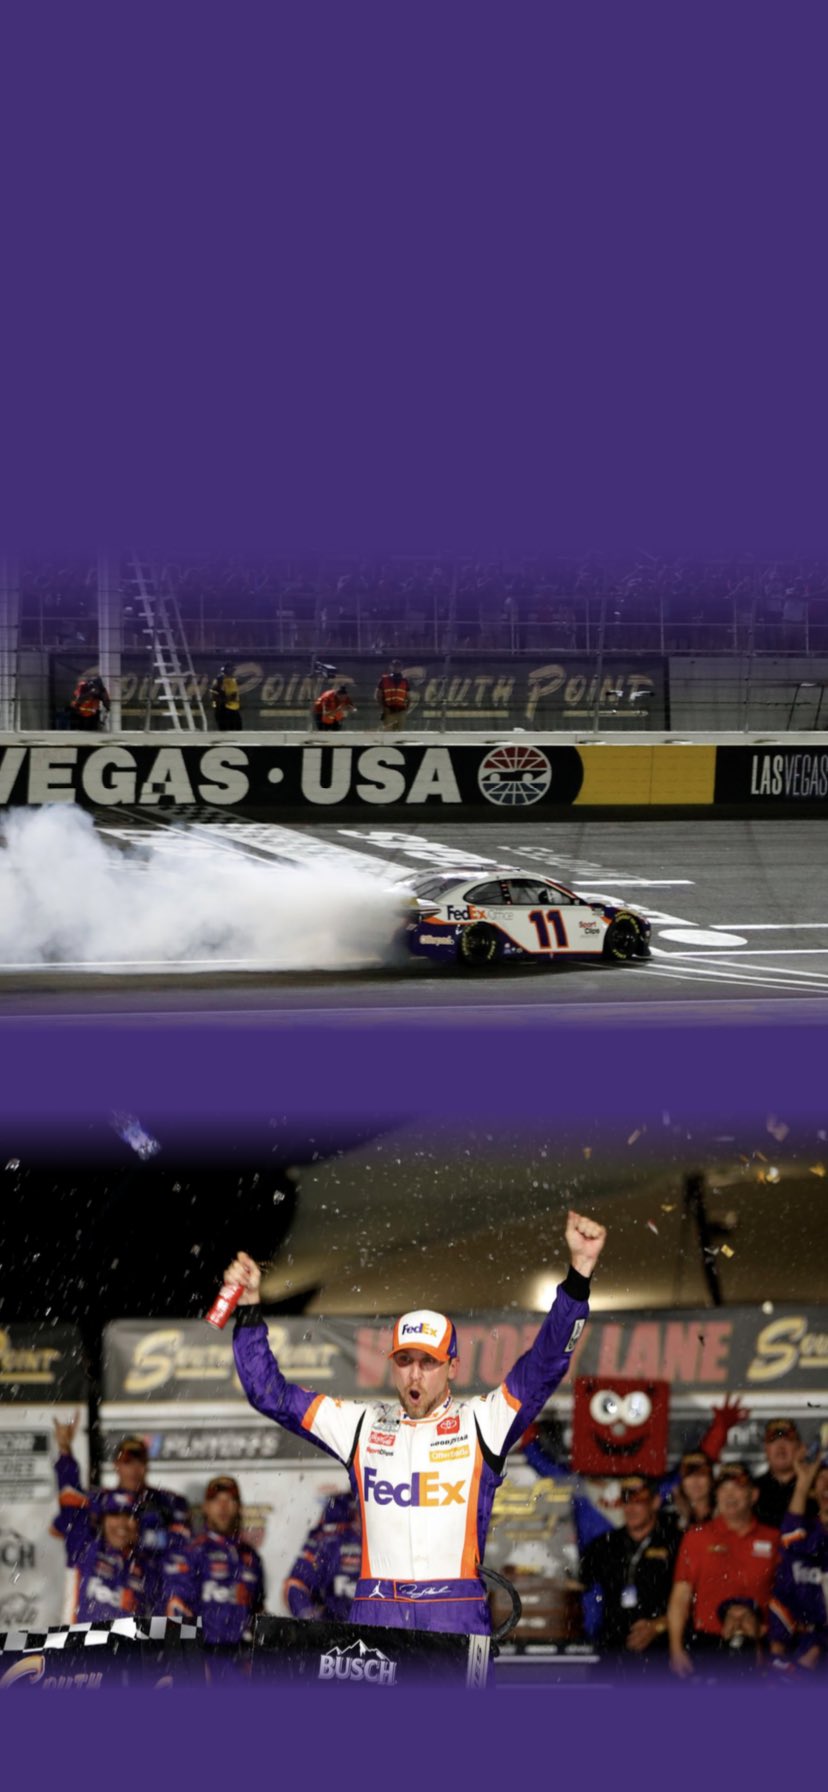 Download Race Car With Denny Hamlin Signature Wallpaper  Wallpaperscom